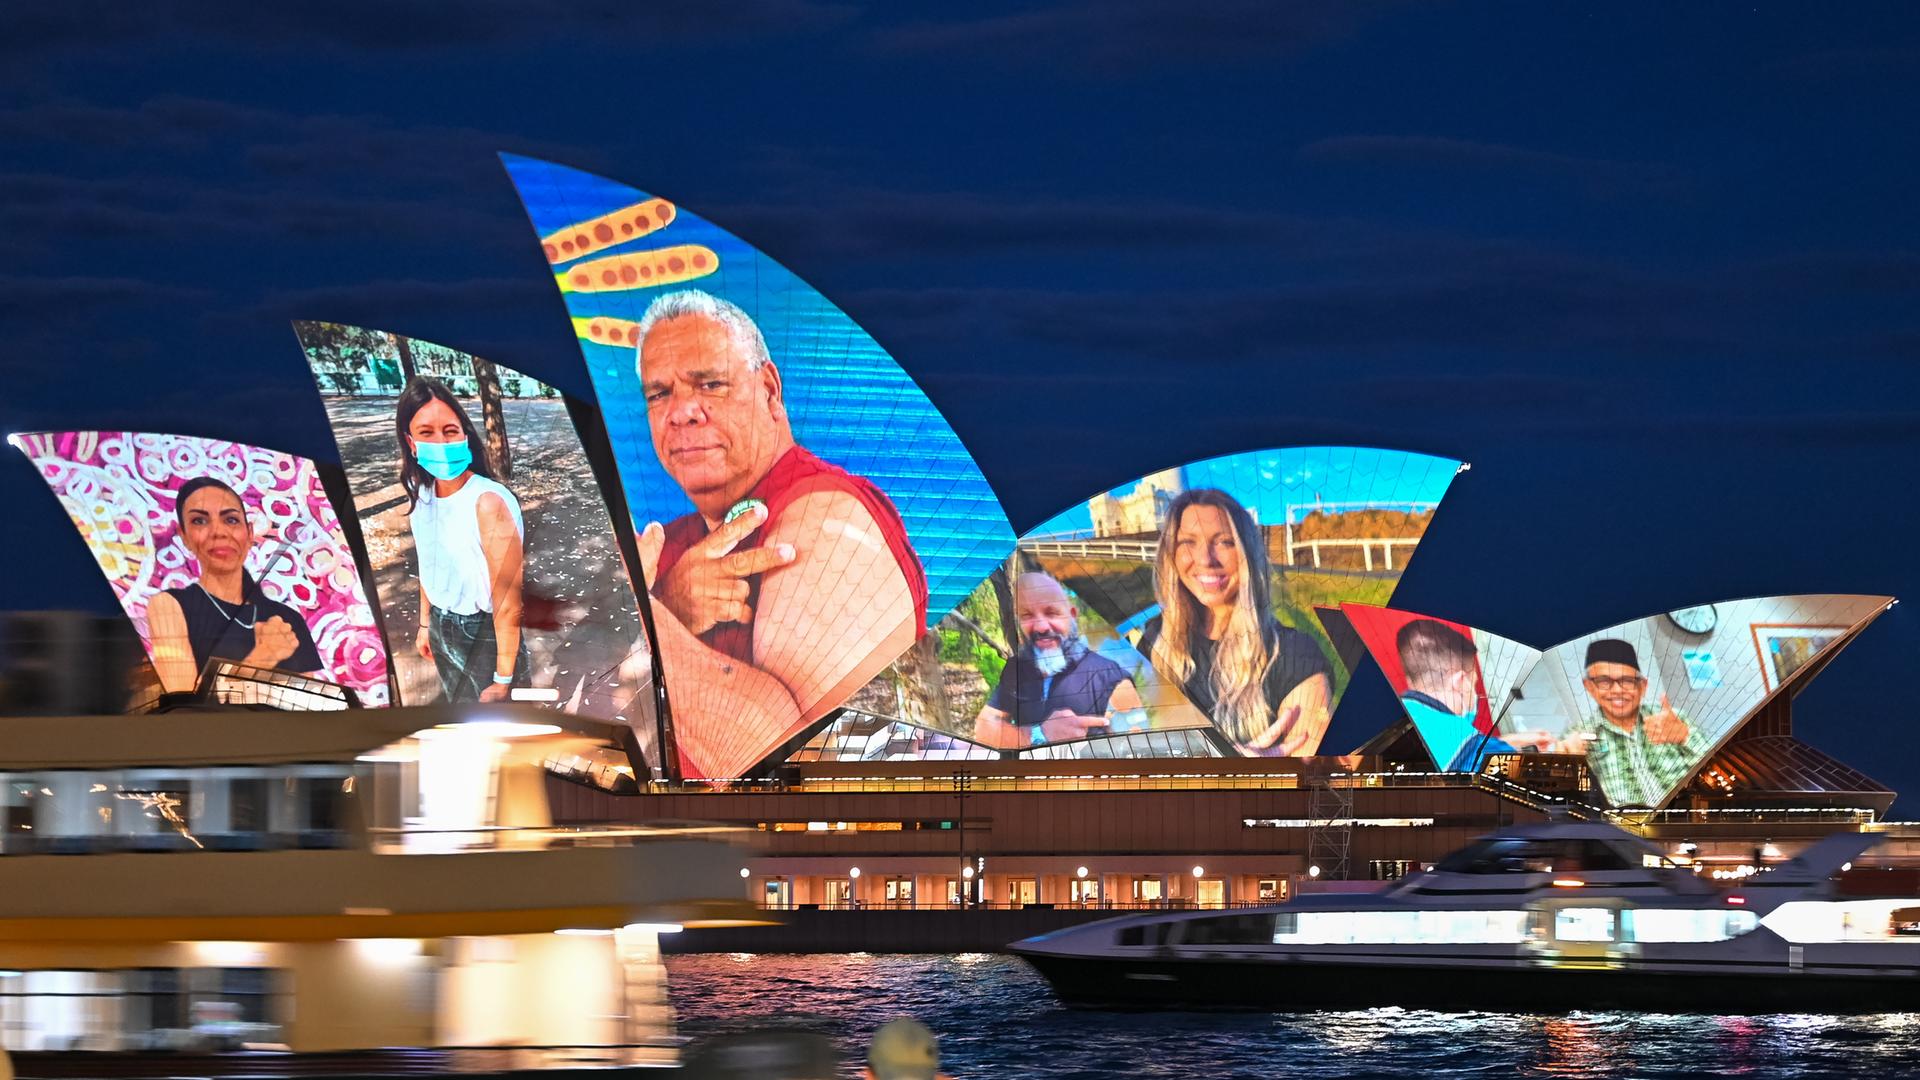 Die Oper von Sydney wird mit Bildern von Geimpften beleuchtet